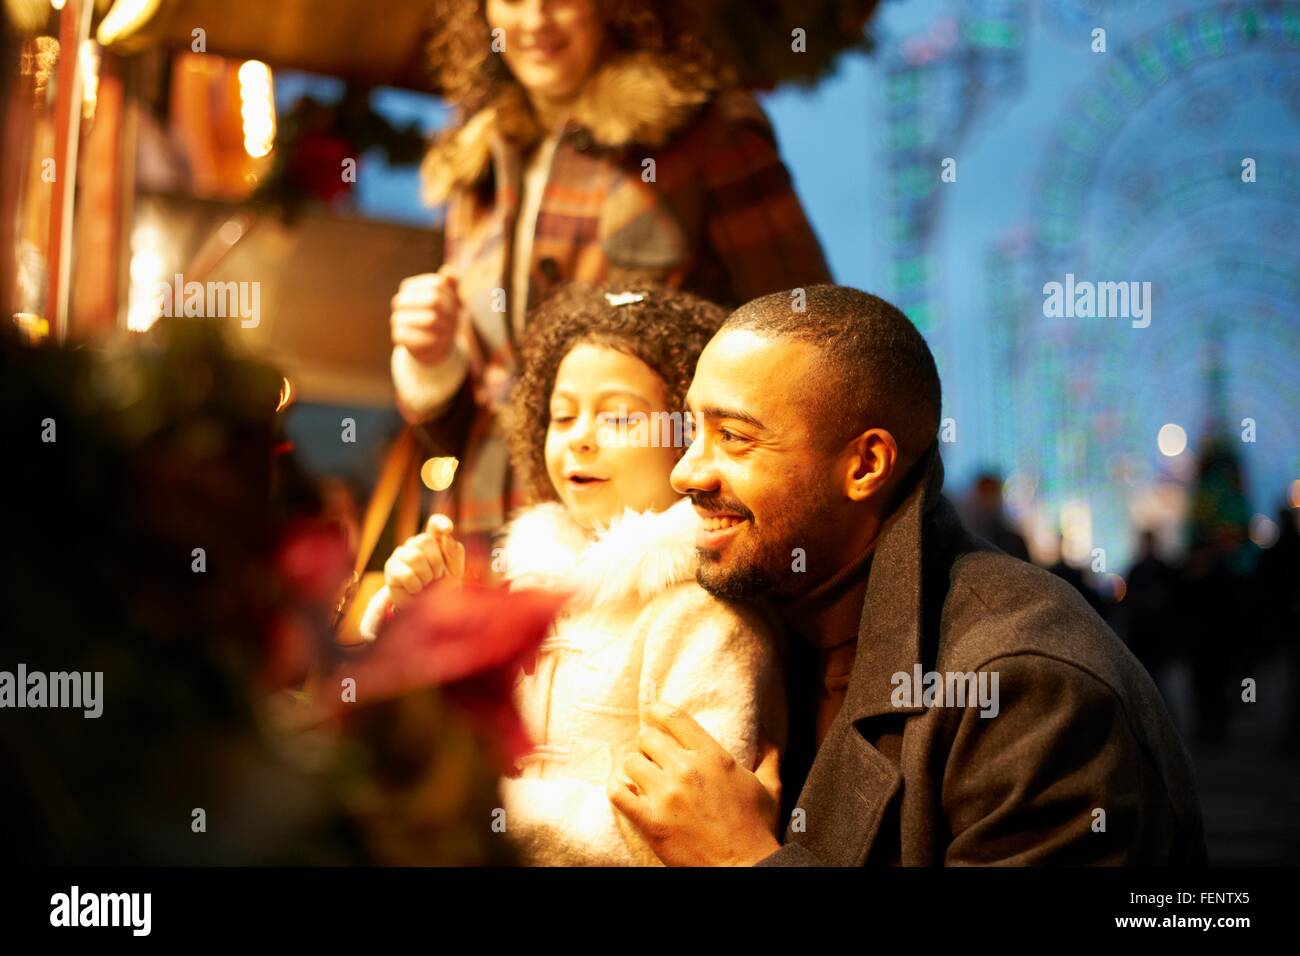 Young family at funfair at night, having fun Stock Photo